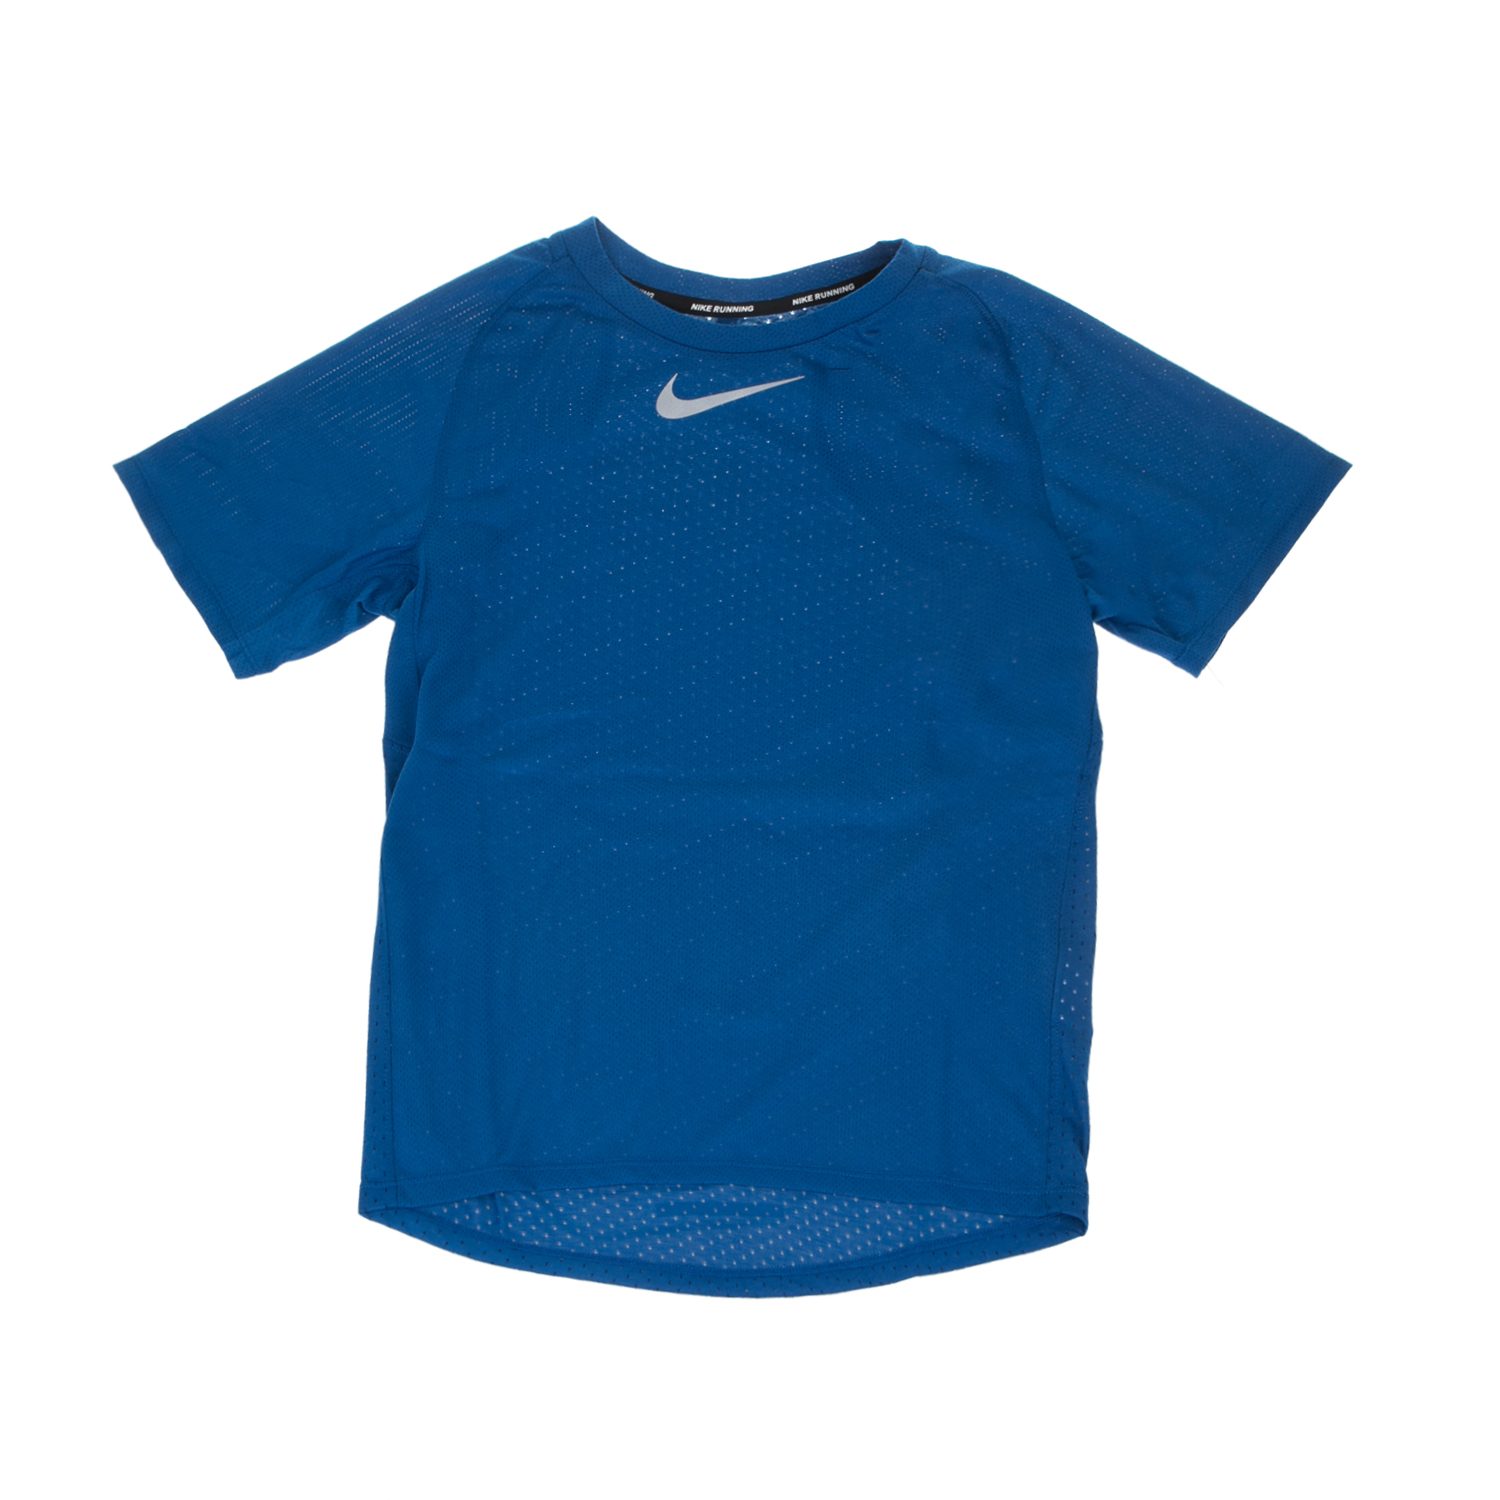 NIKE Αγορίστικη κοντομάνικη μπλούζα Nike BRTHE TOP SS SEASONAL μπλε